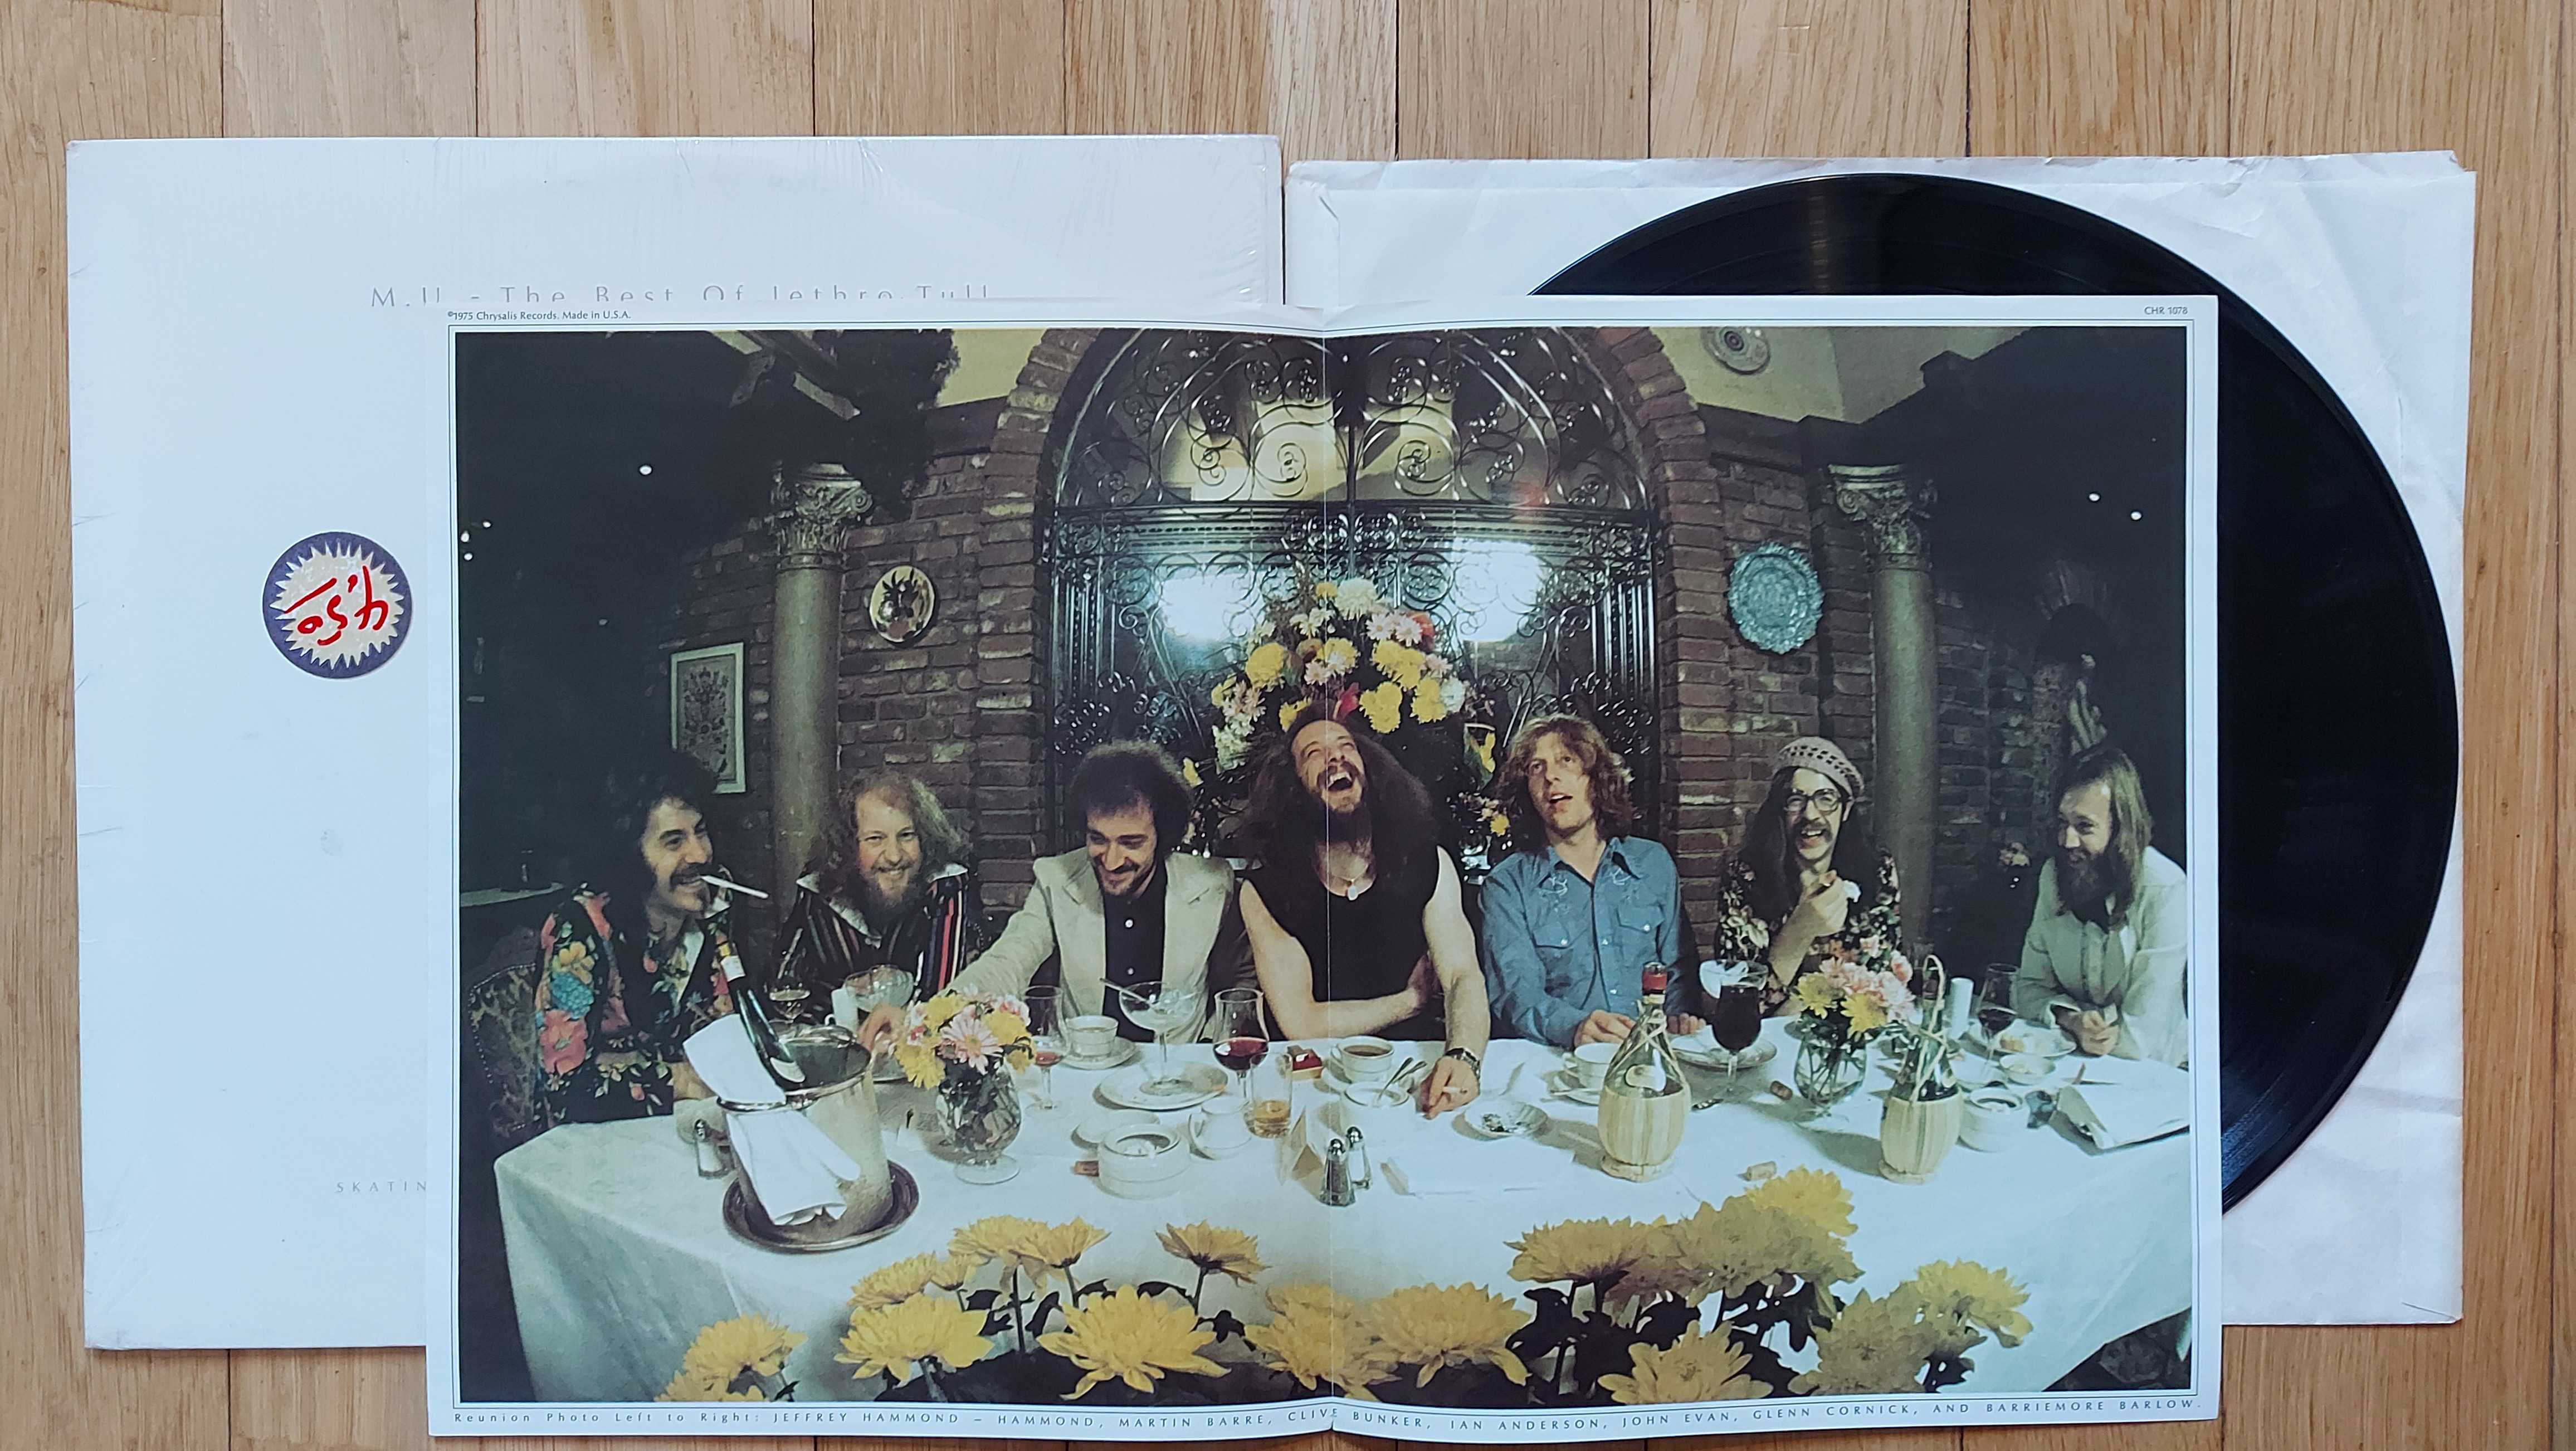 Jethro Tull ‎– M.U. - The Best Of Jethro Tull  1975  US  (EX+/NM)